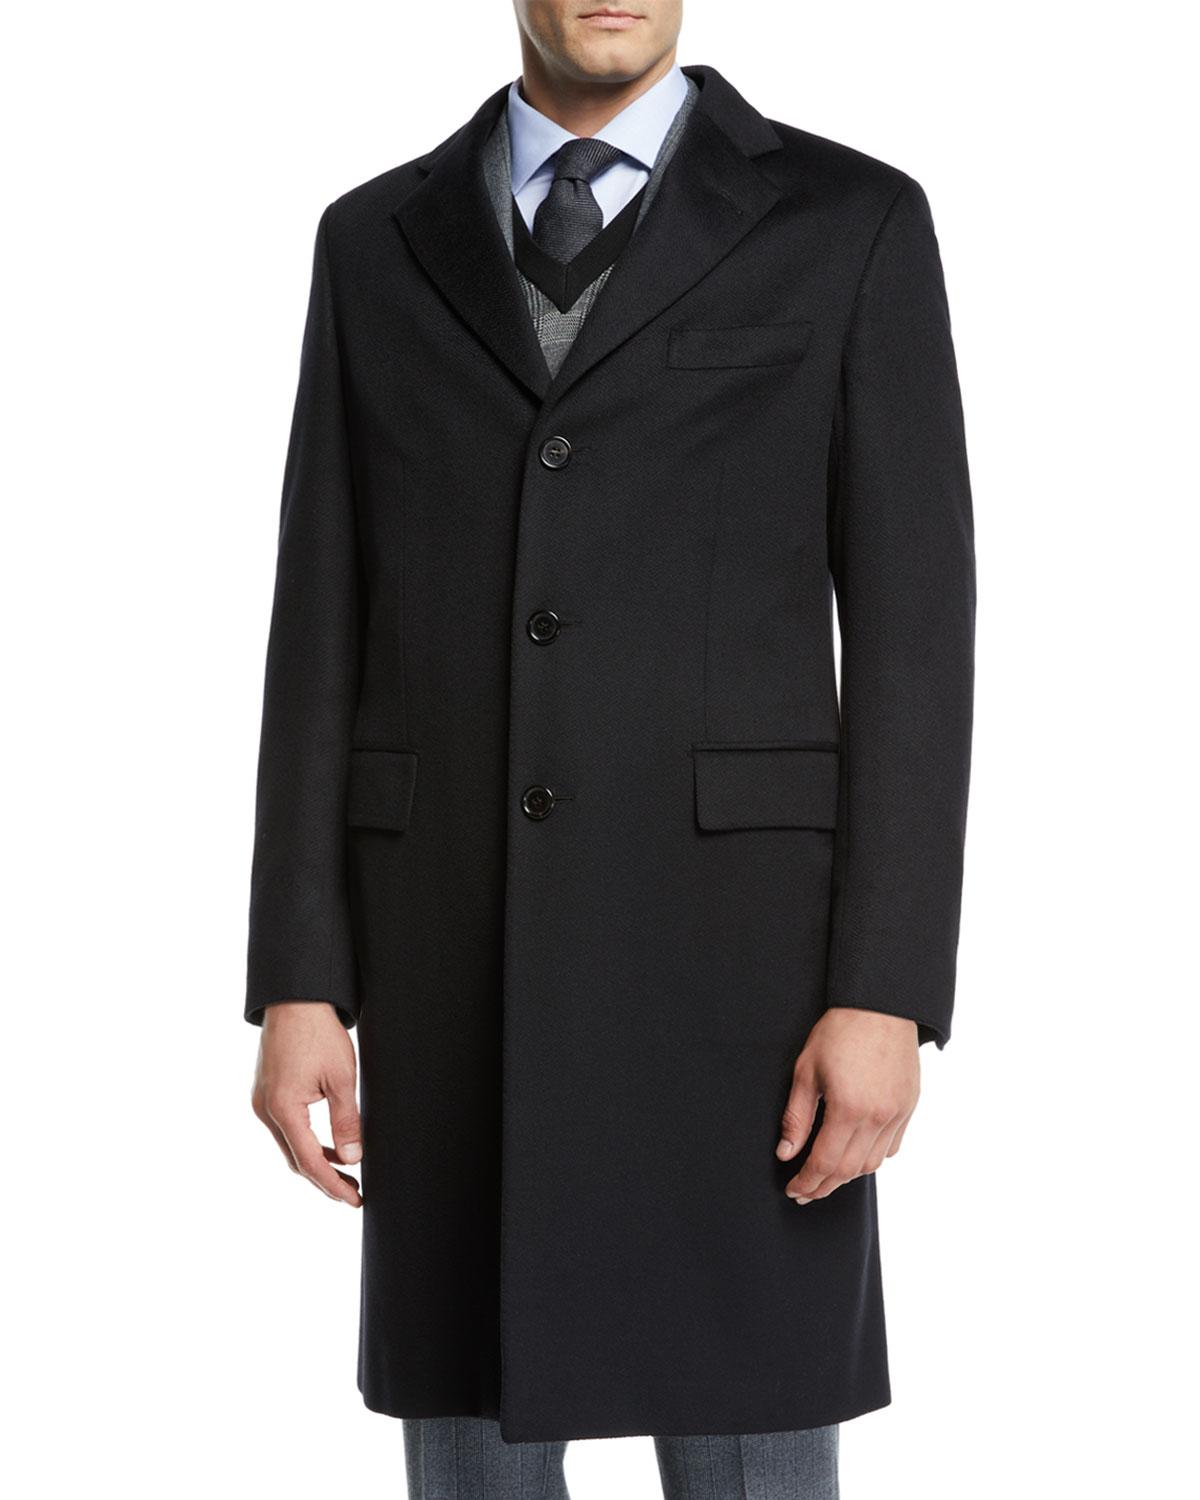 Brioni Men's Cashmere Car Coat in Black for Men - Save 1% - Lyst